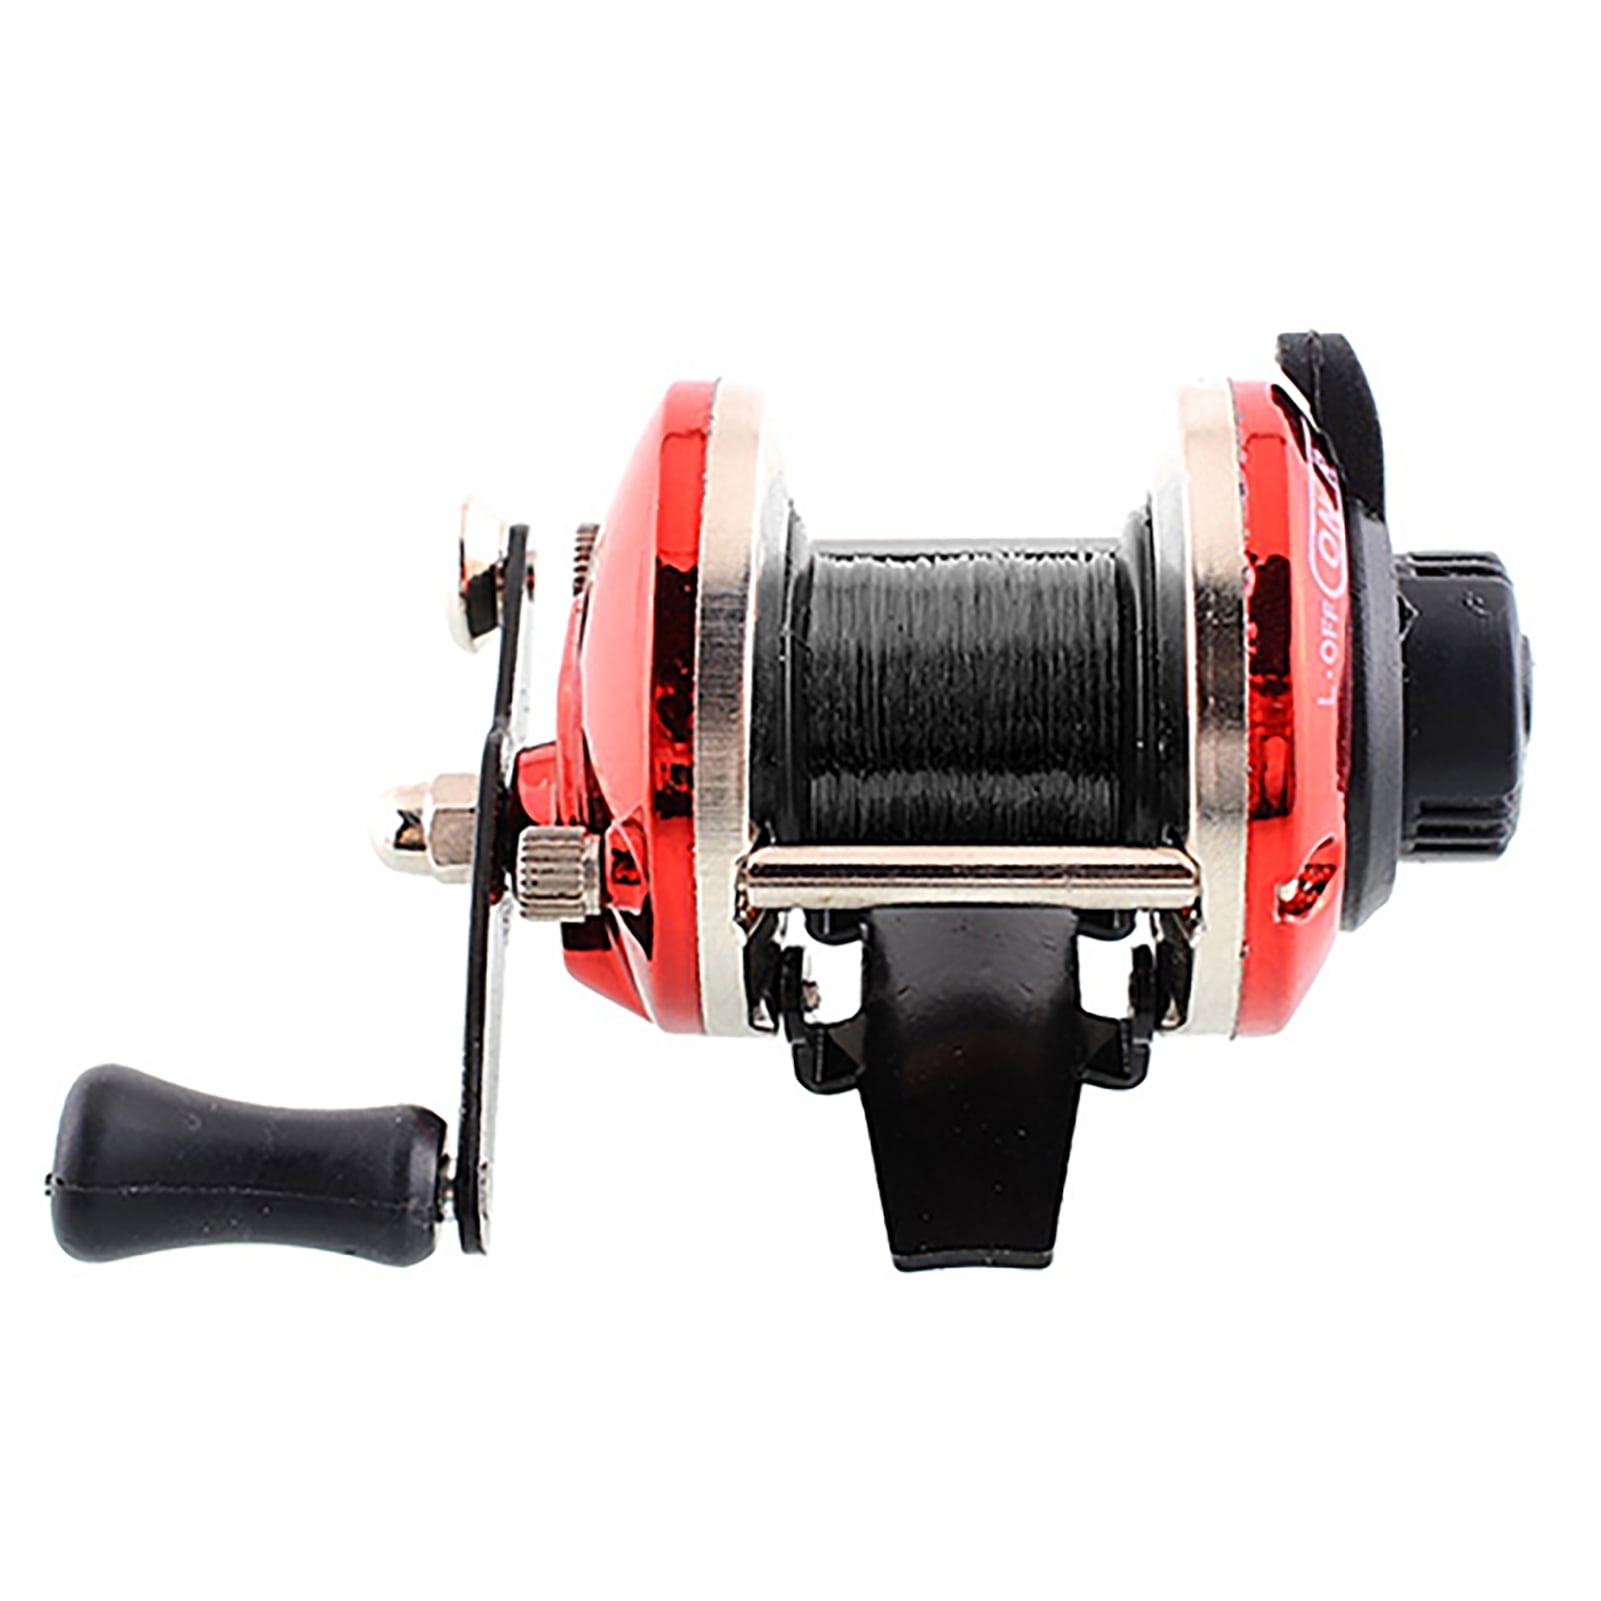 NEWwt Fishing Wheel Powerful Reversible Handle Metal Spinning